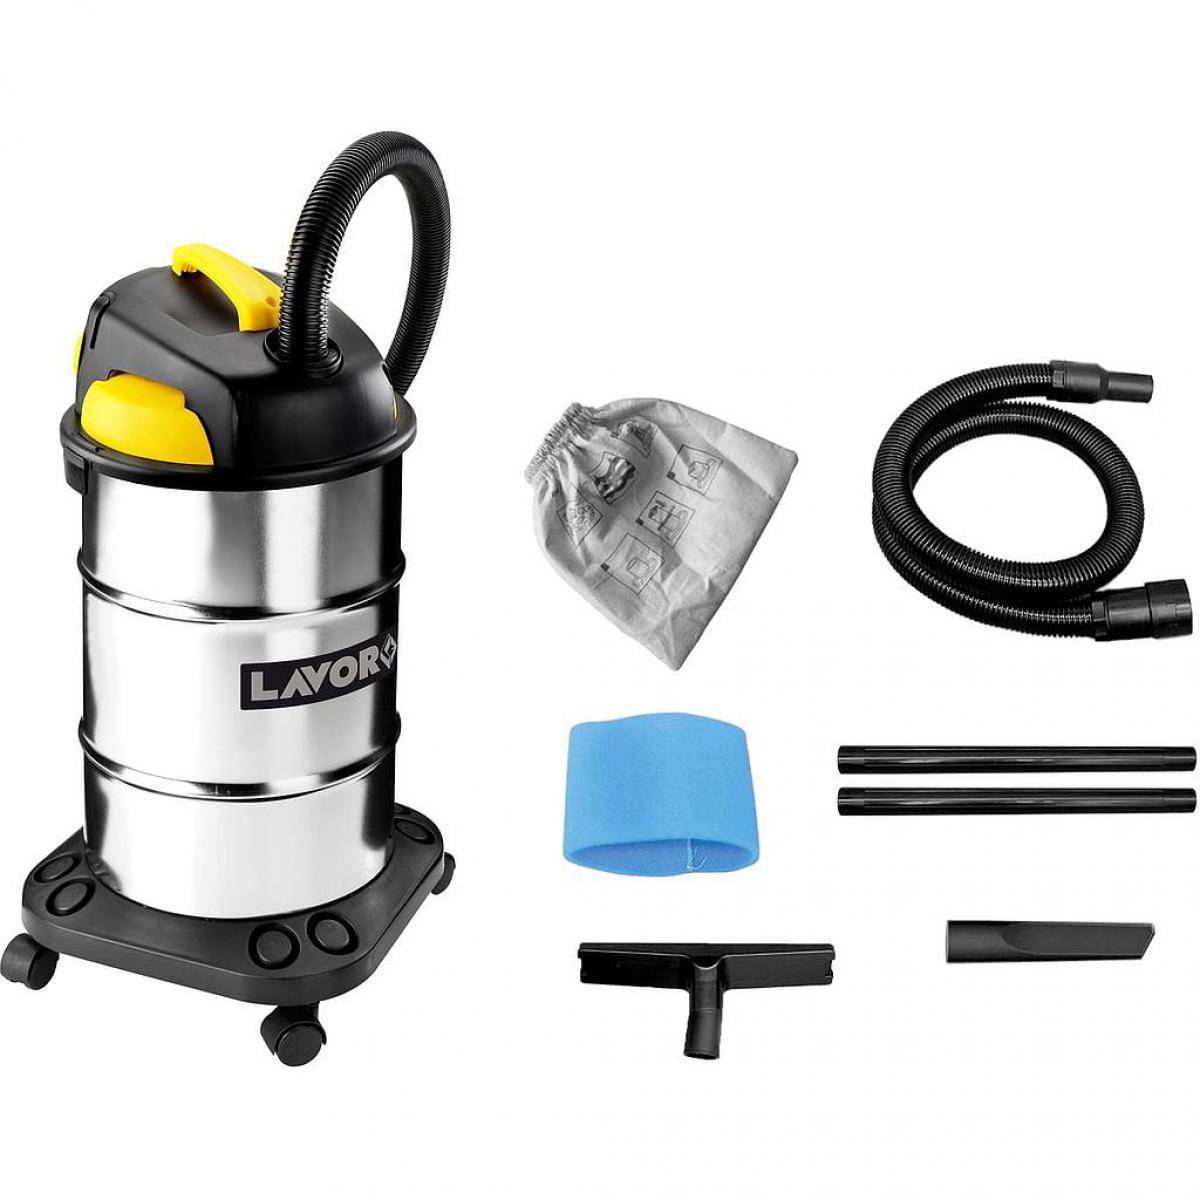 Lavor - Lavor - Aspirateur eau et poussières inox 1000W 180 mbar 30L - Vac 30 S - Aspirateur eau et poussière